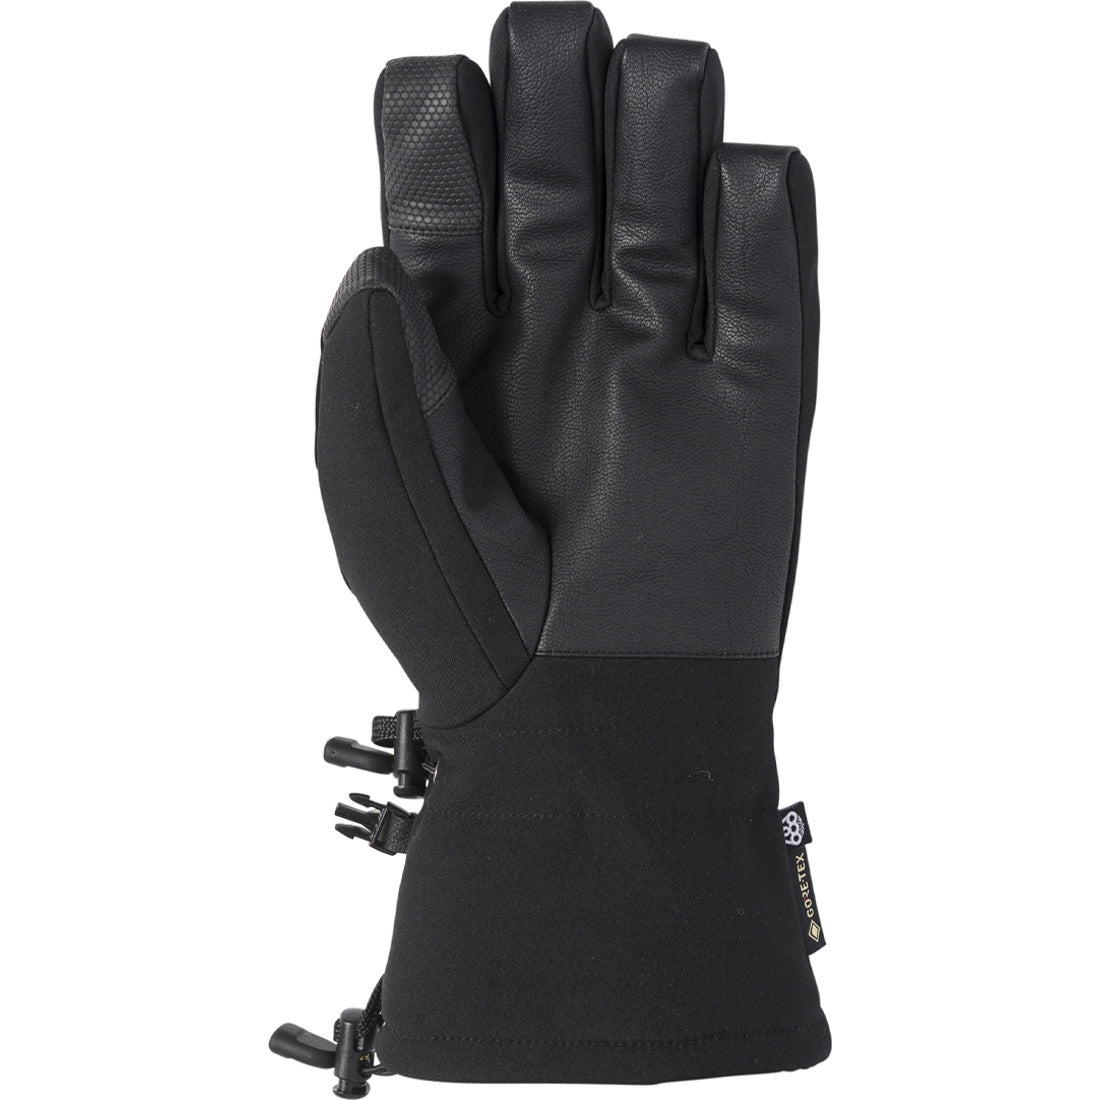 686 GTX Linear Glove - Men's